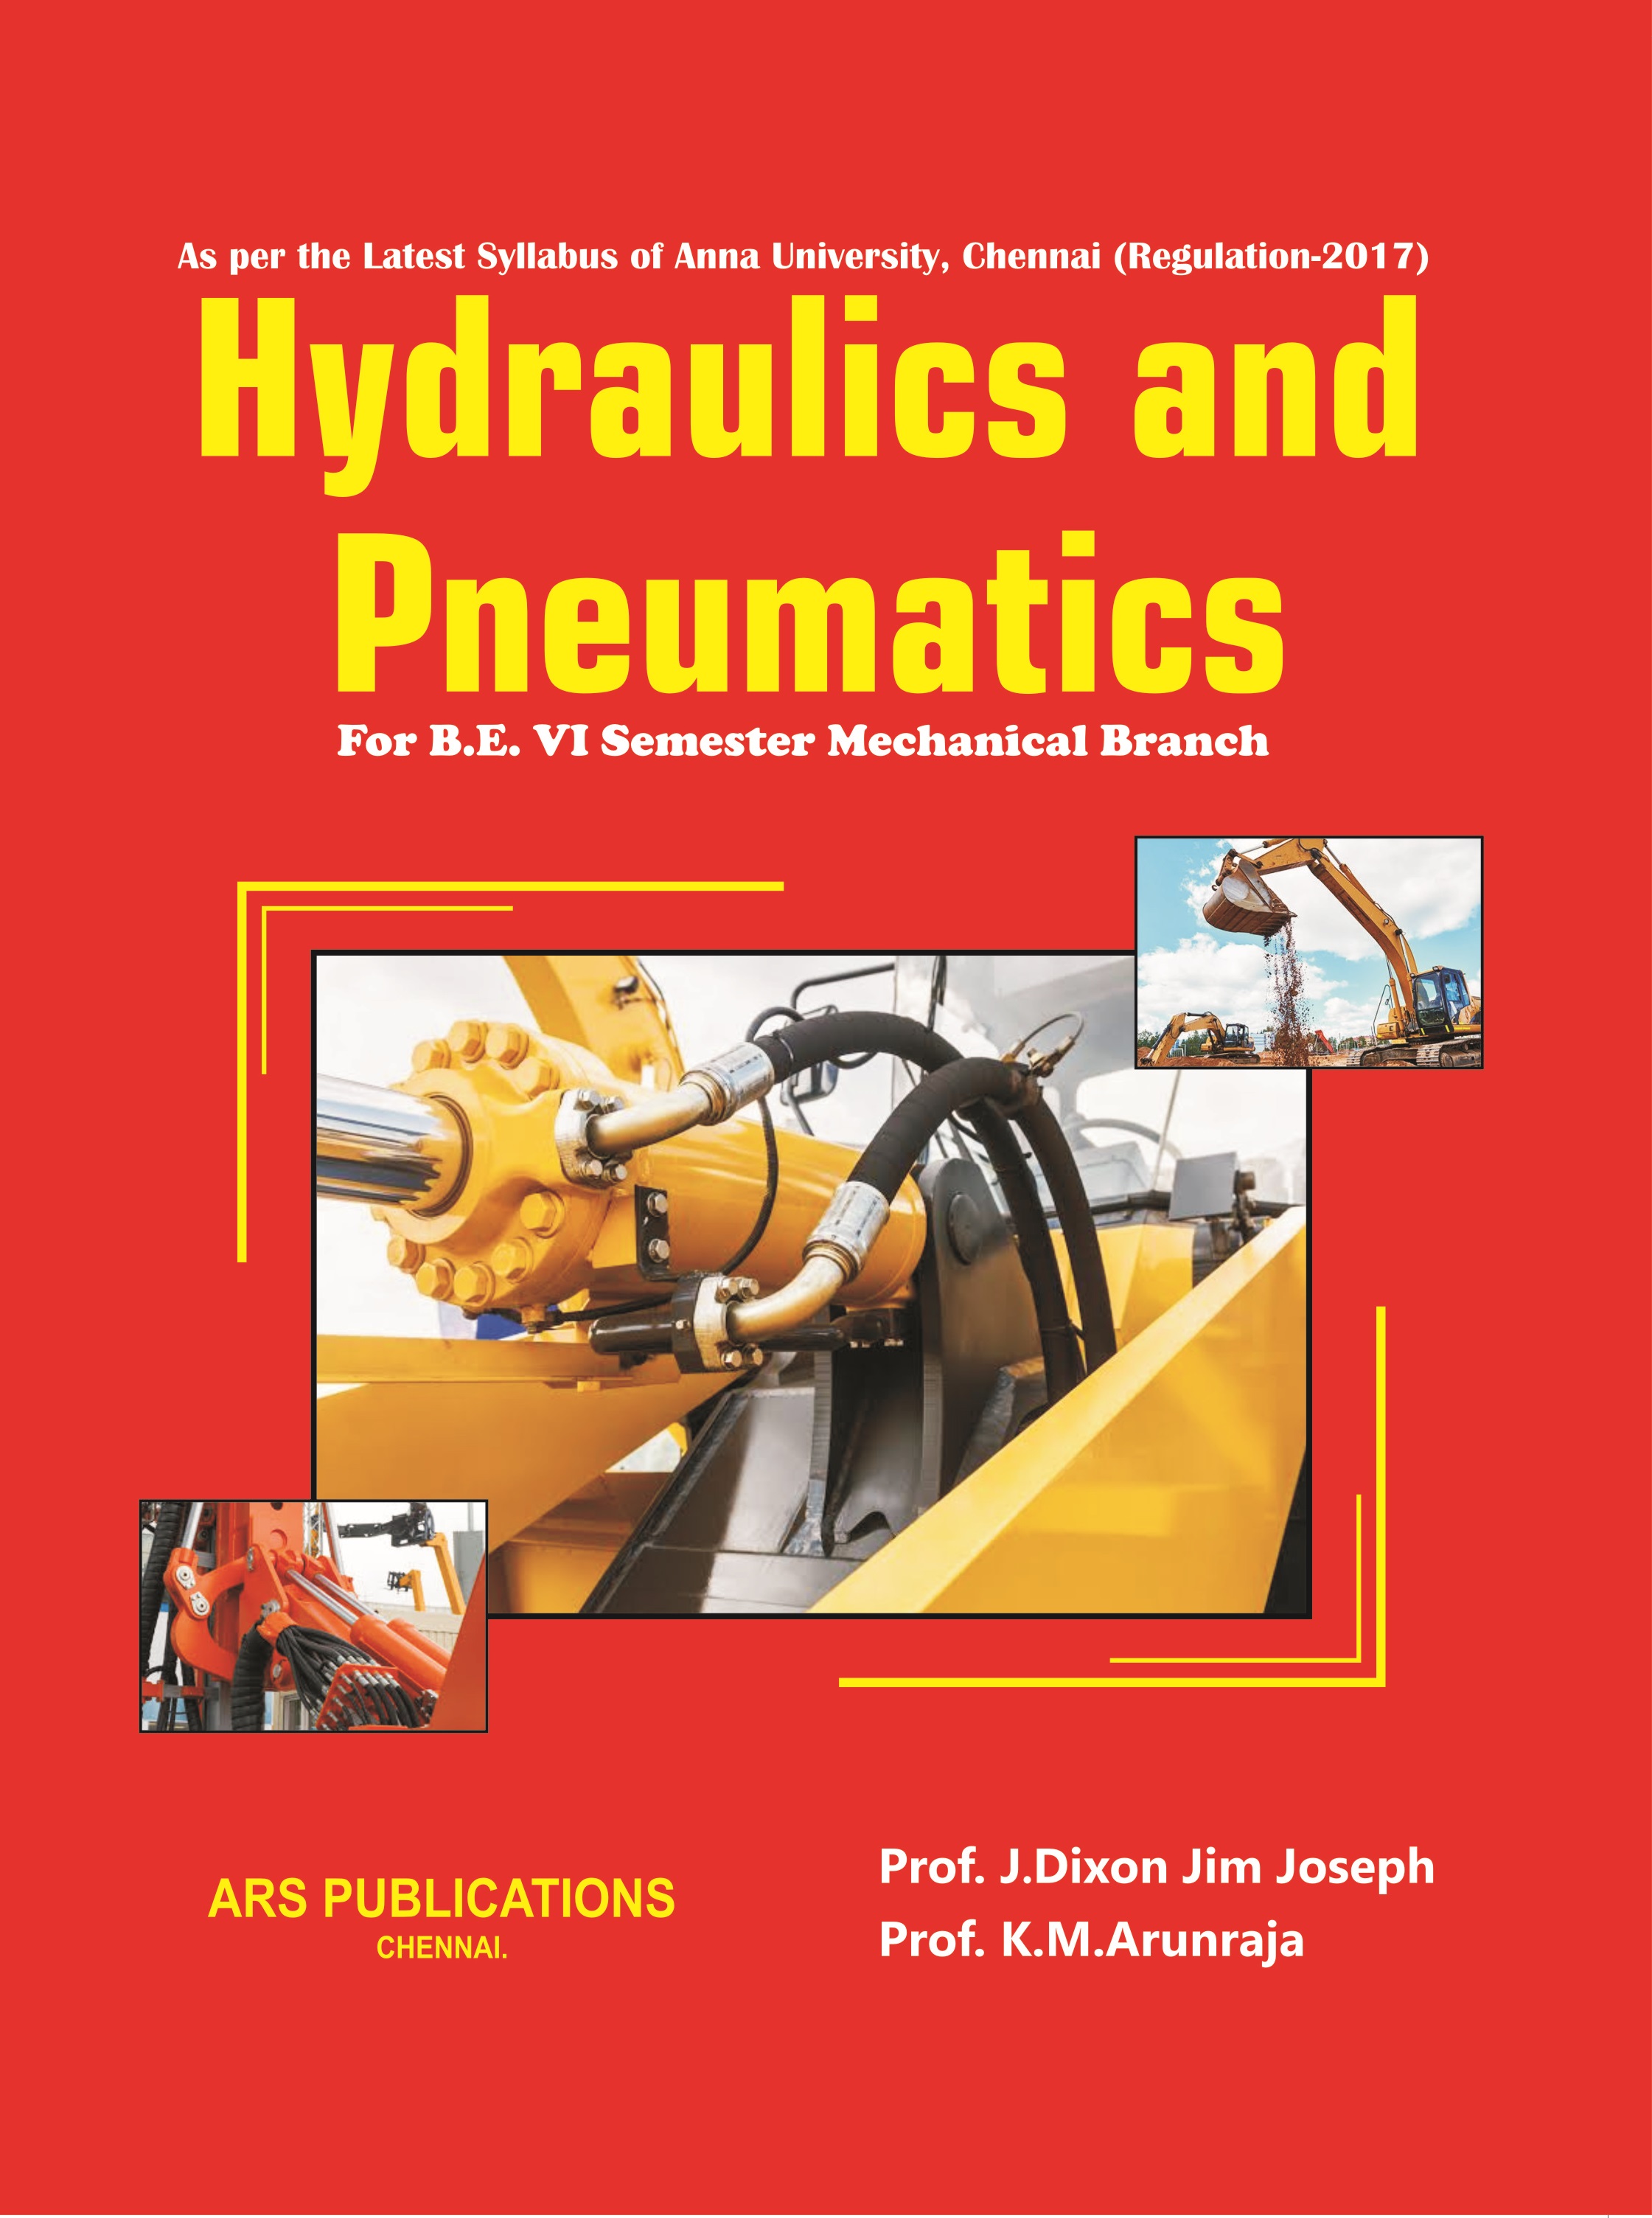 Hydraulics and Pneumatics ARS Publications